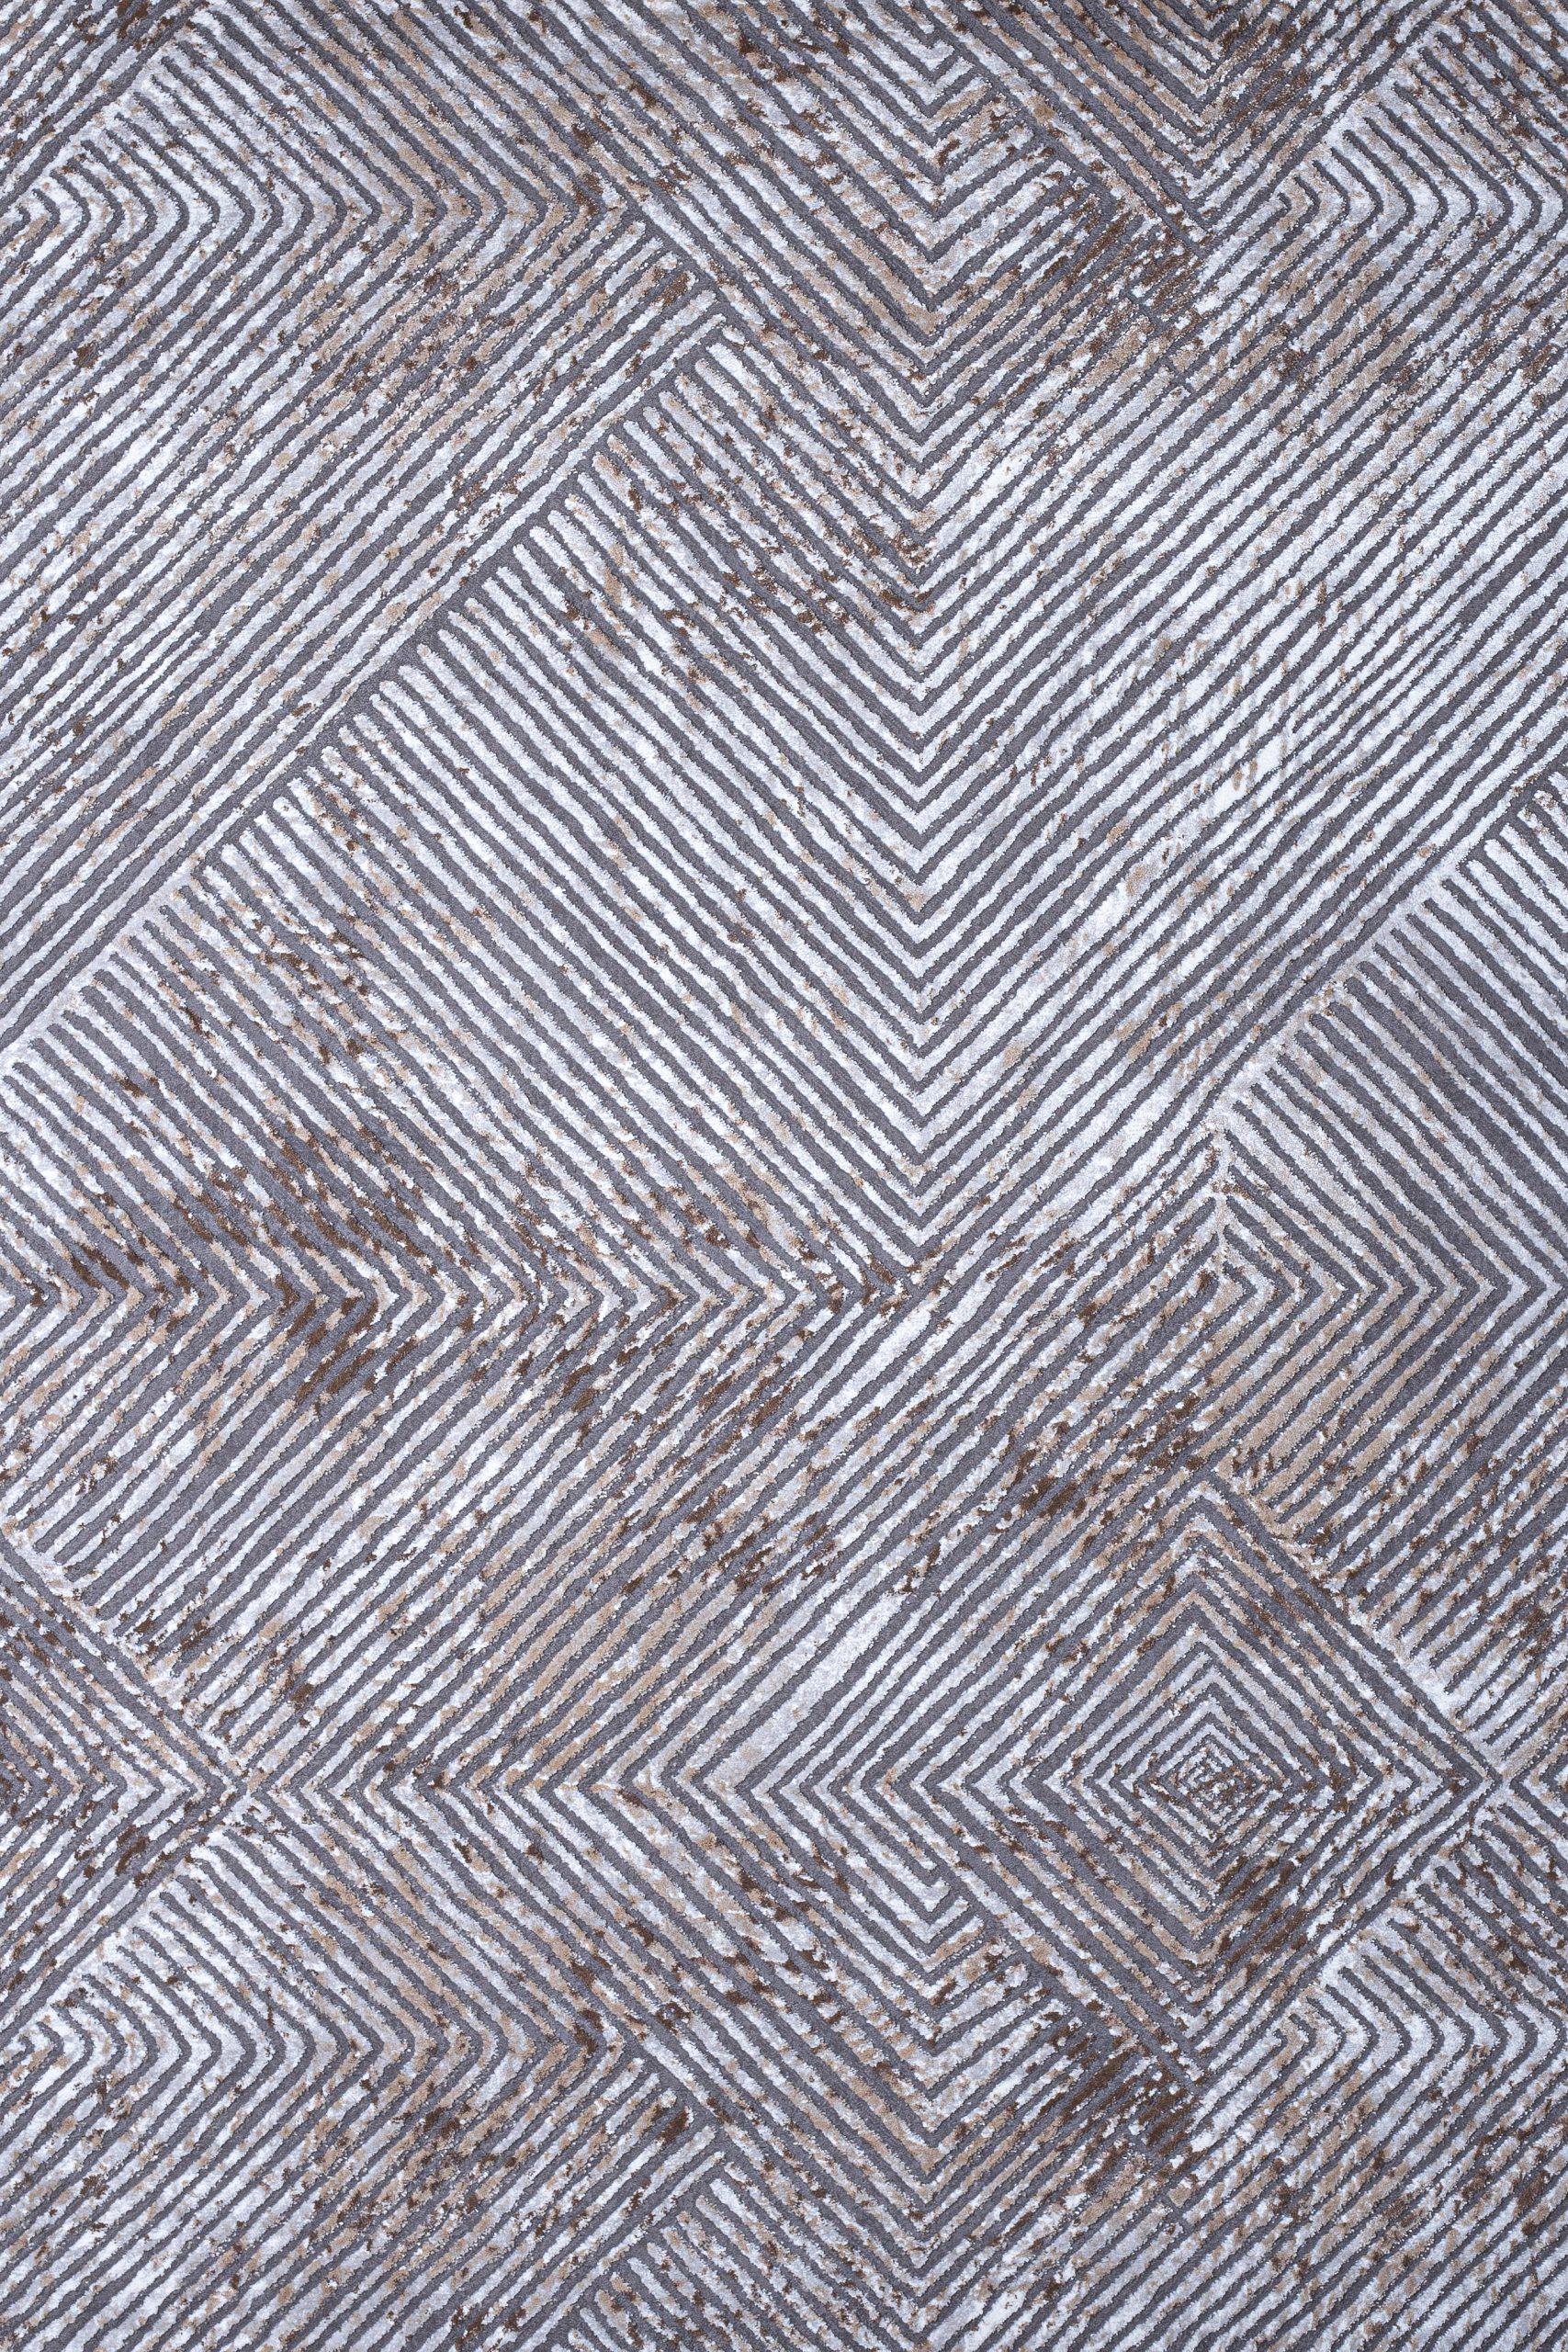 Γραμμικό χαλί γκρι μπεζ Ostia 7100/976 - 2,50x3,50 Colore Colori